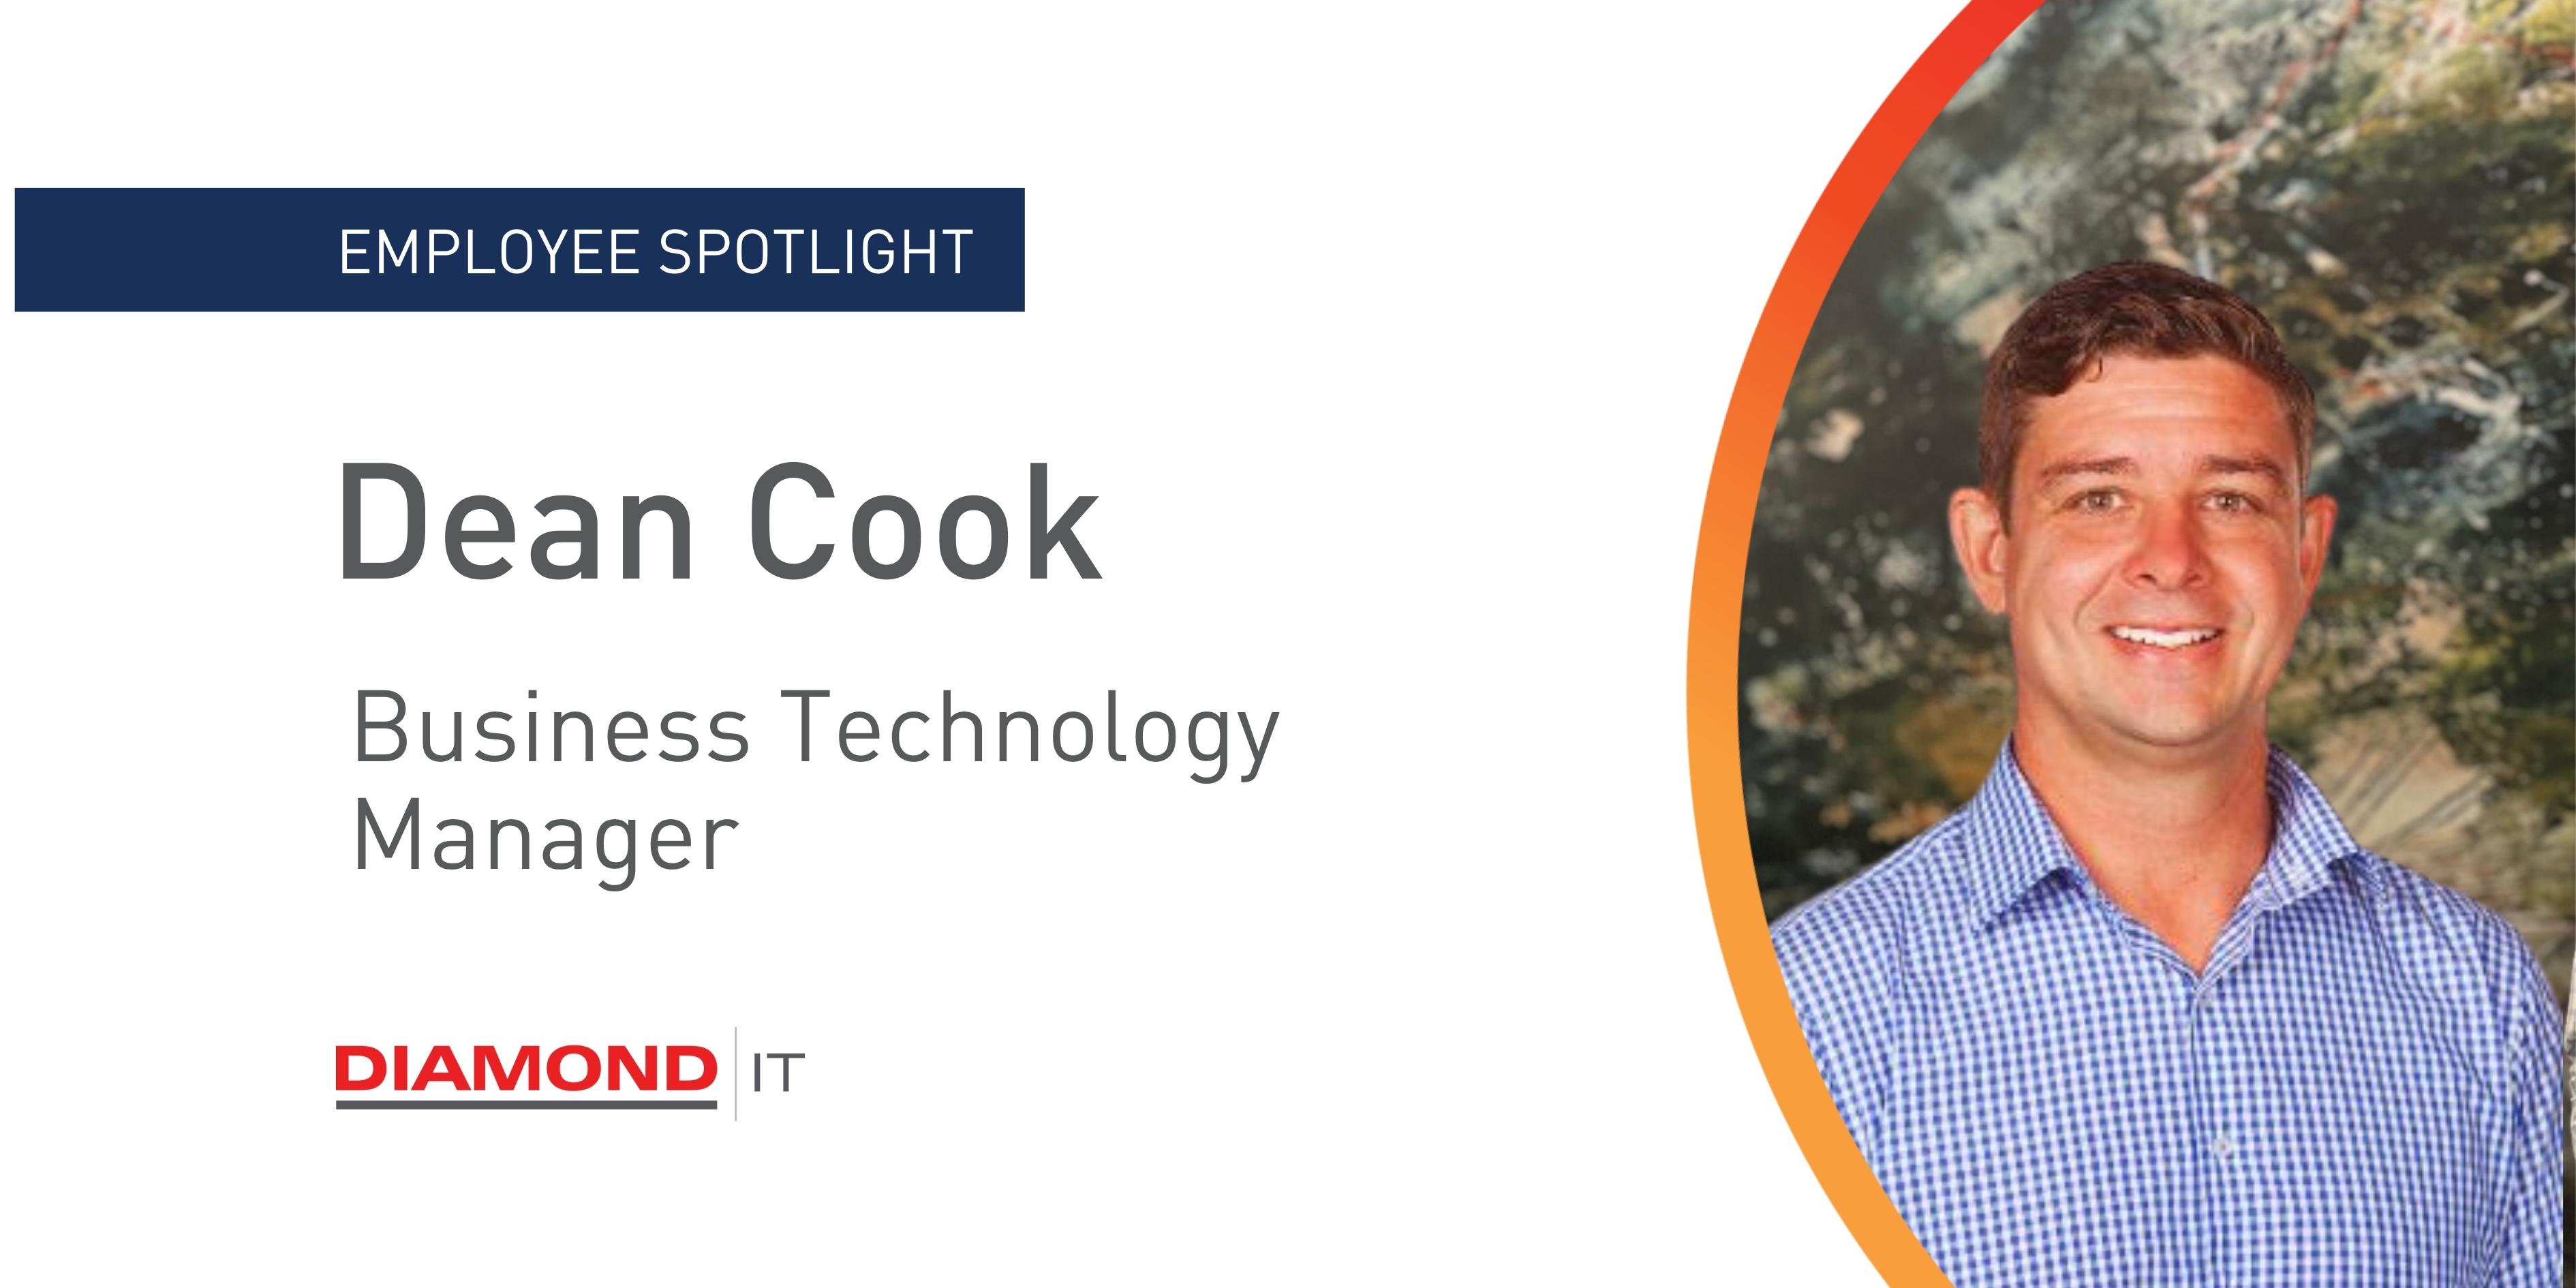 Meet Dean Cook - Business Technology Manager